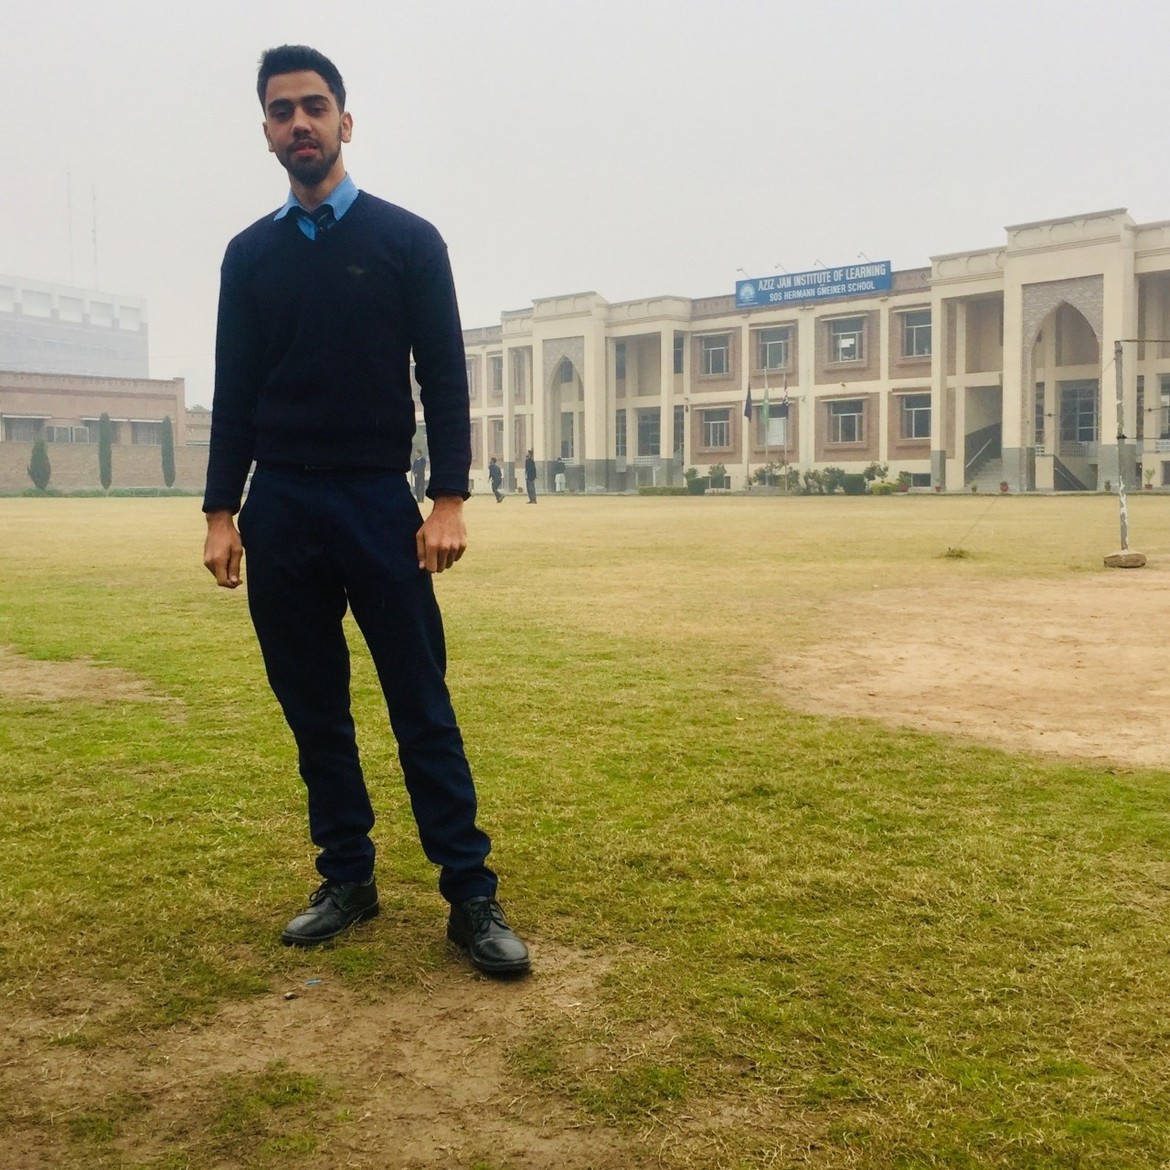 Qayoum at his college in Pakistan